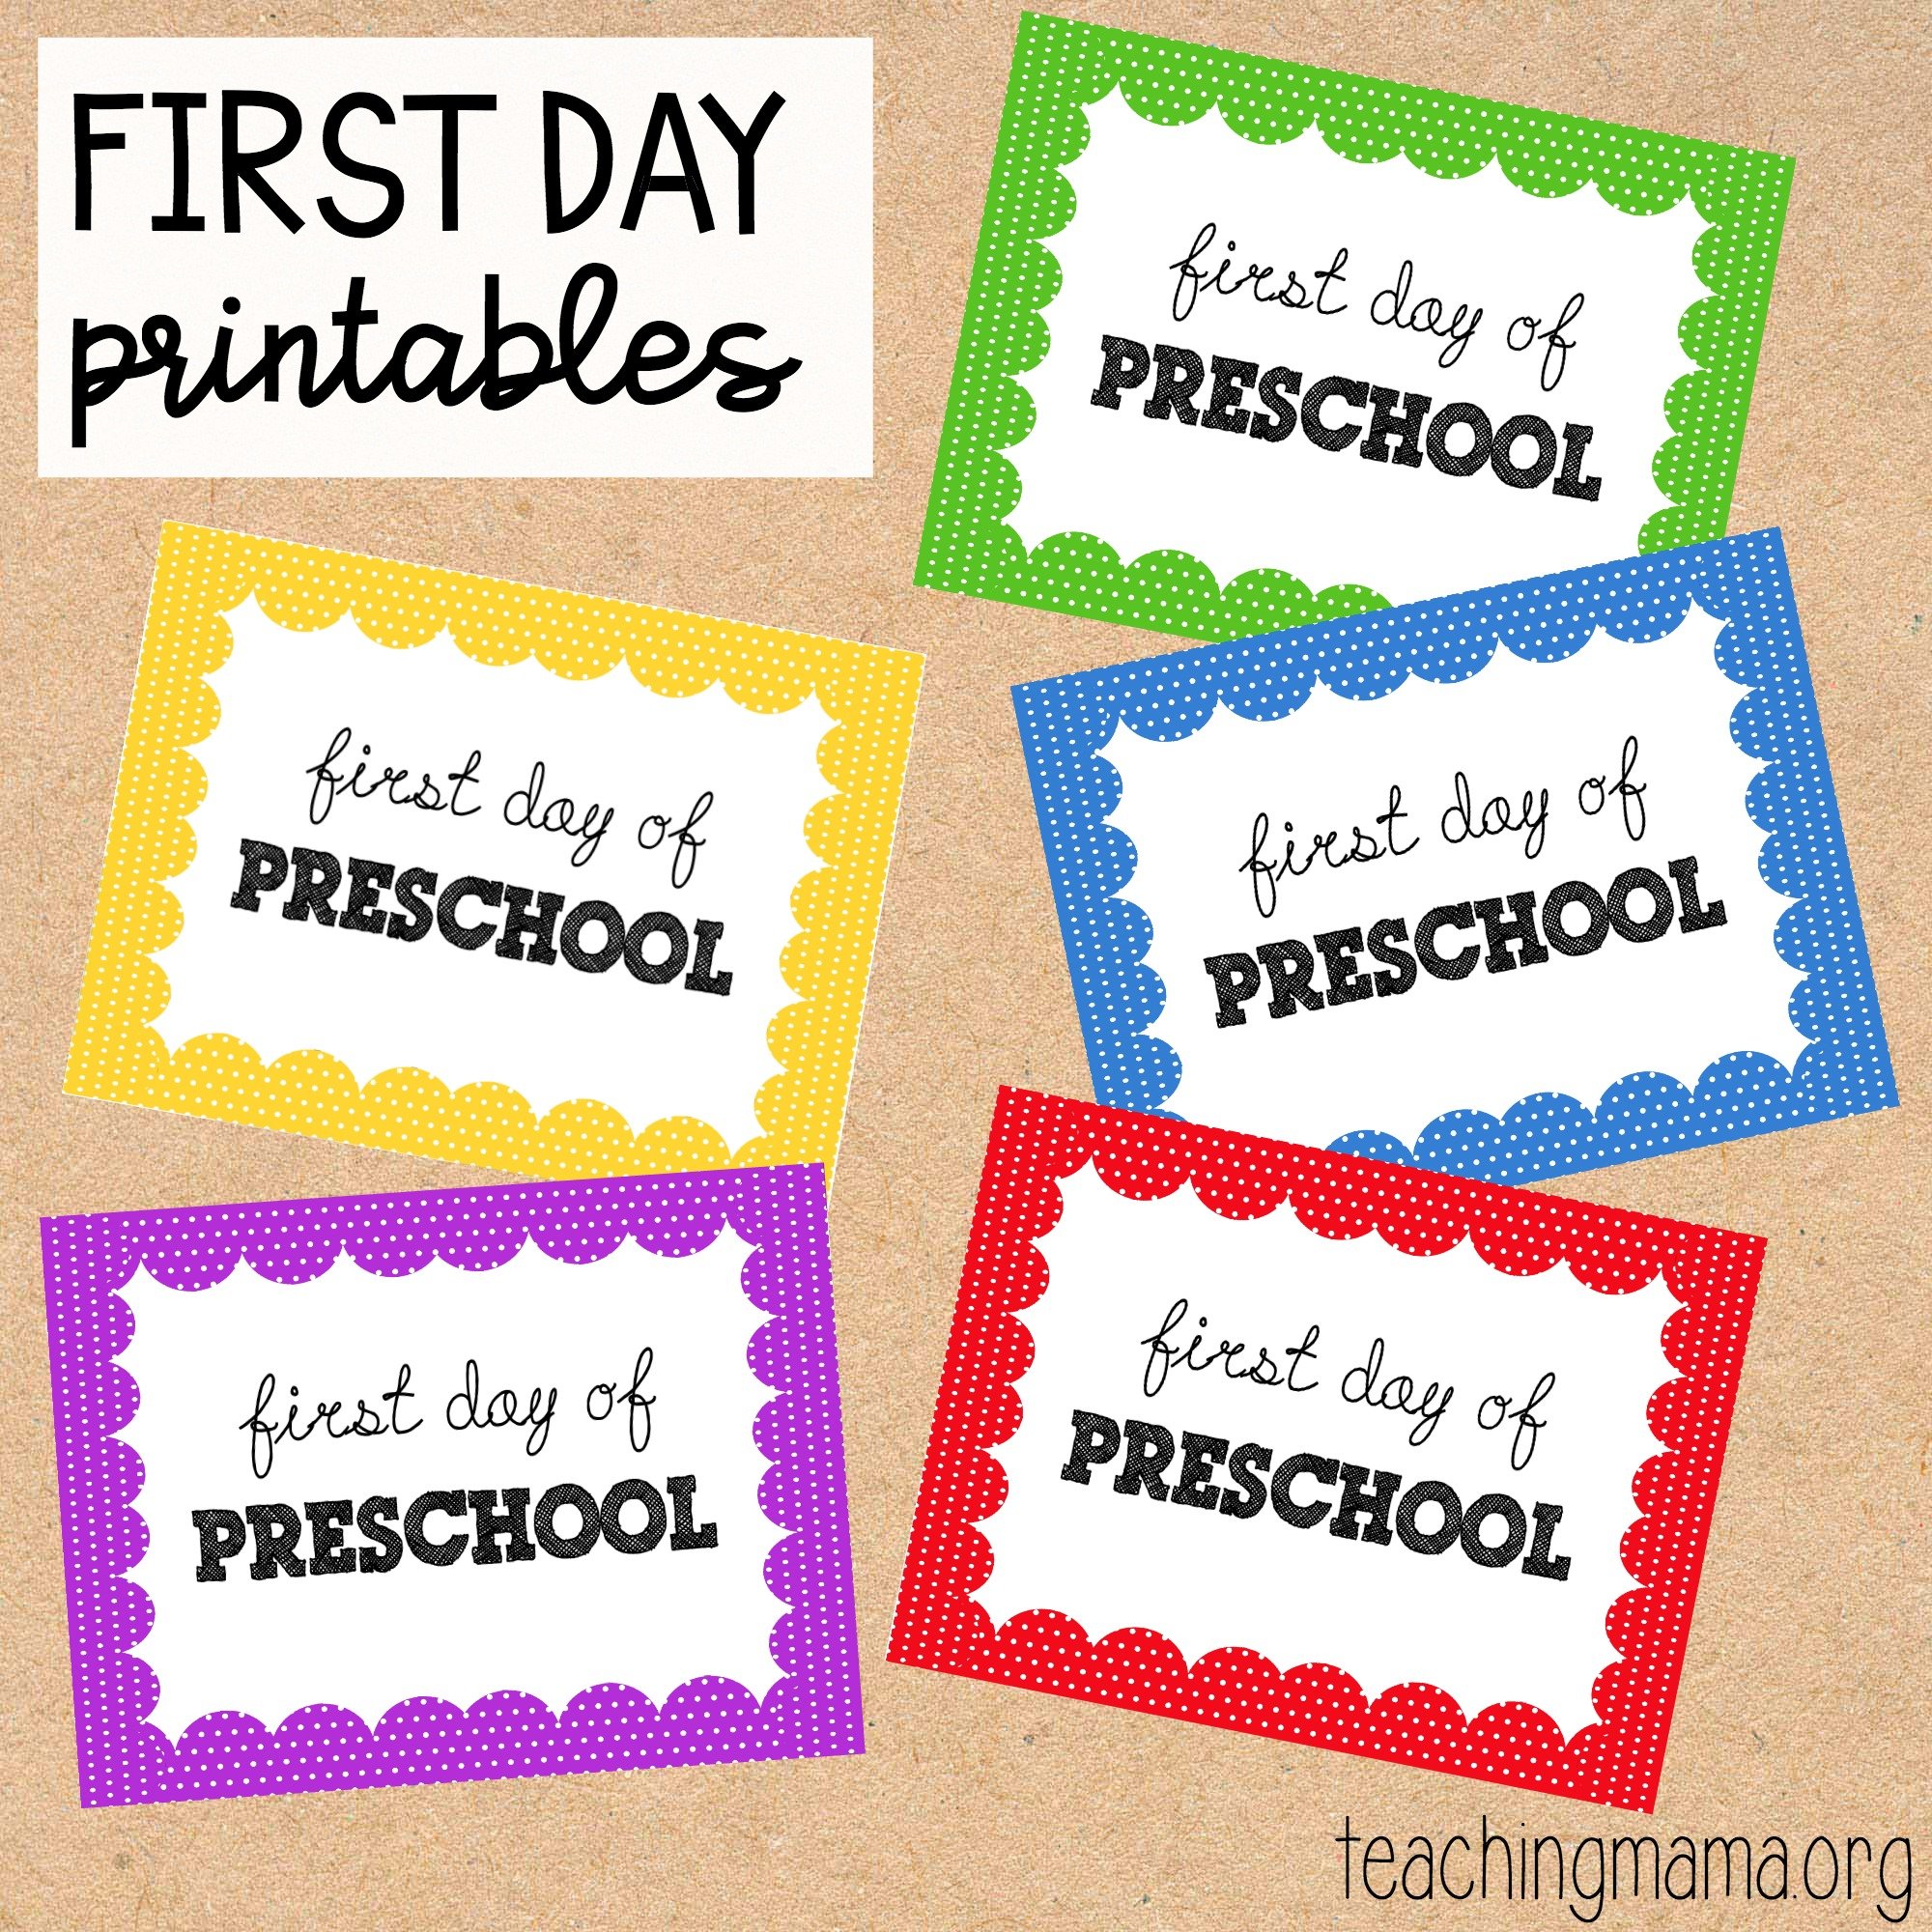 First day of preschool activities